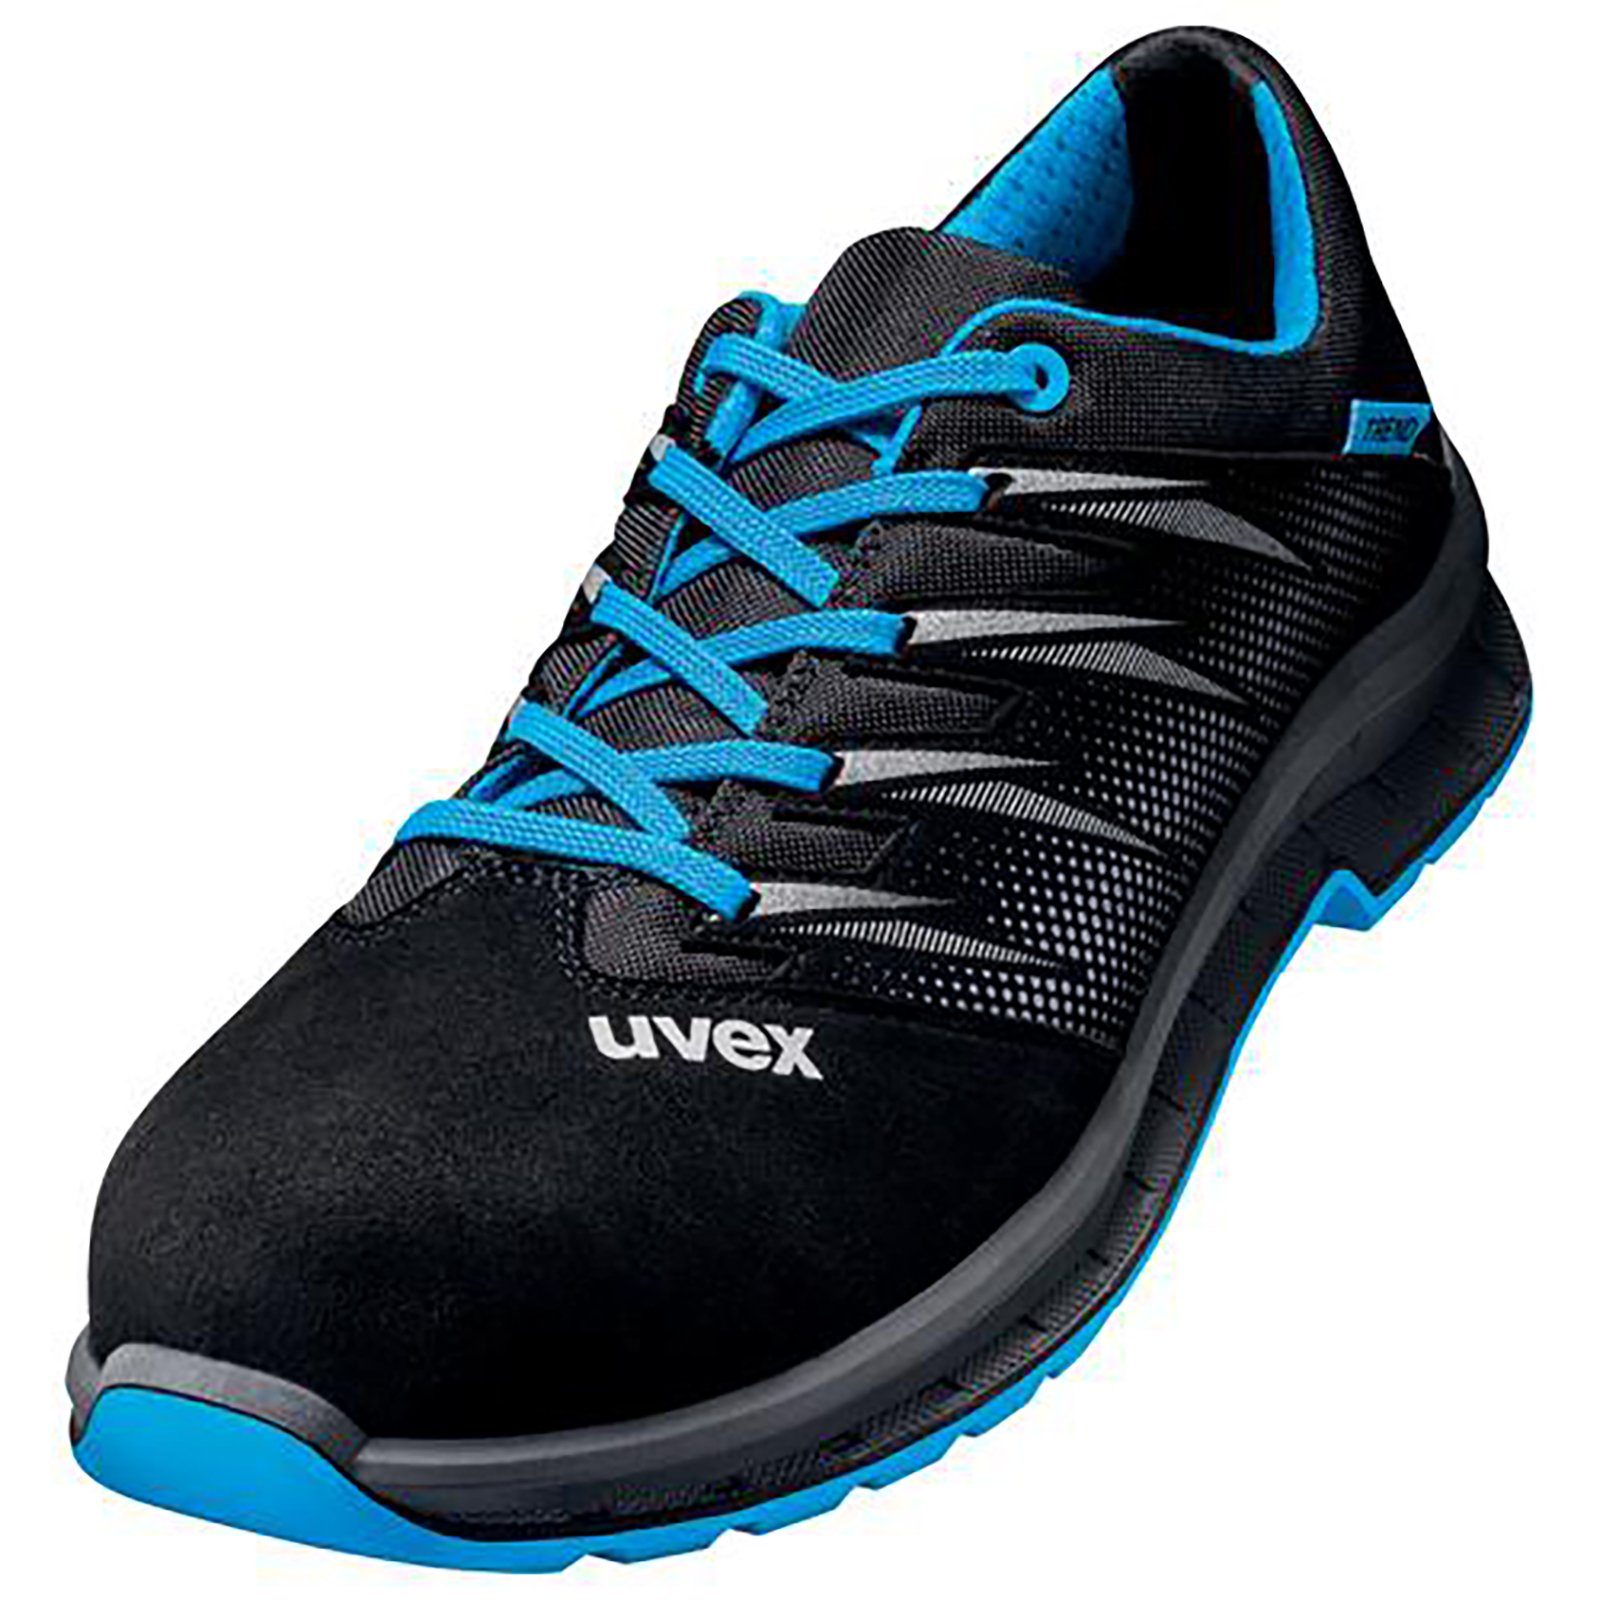 Uvex 2 trend Halbschuhe Weite S2 Sicherheitsschuh 10 schwarz blau